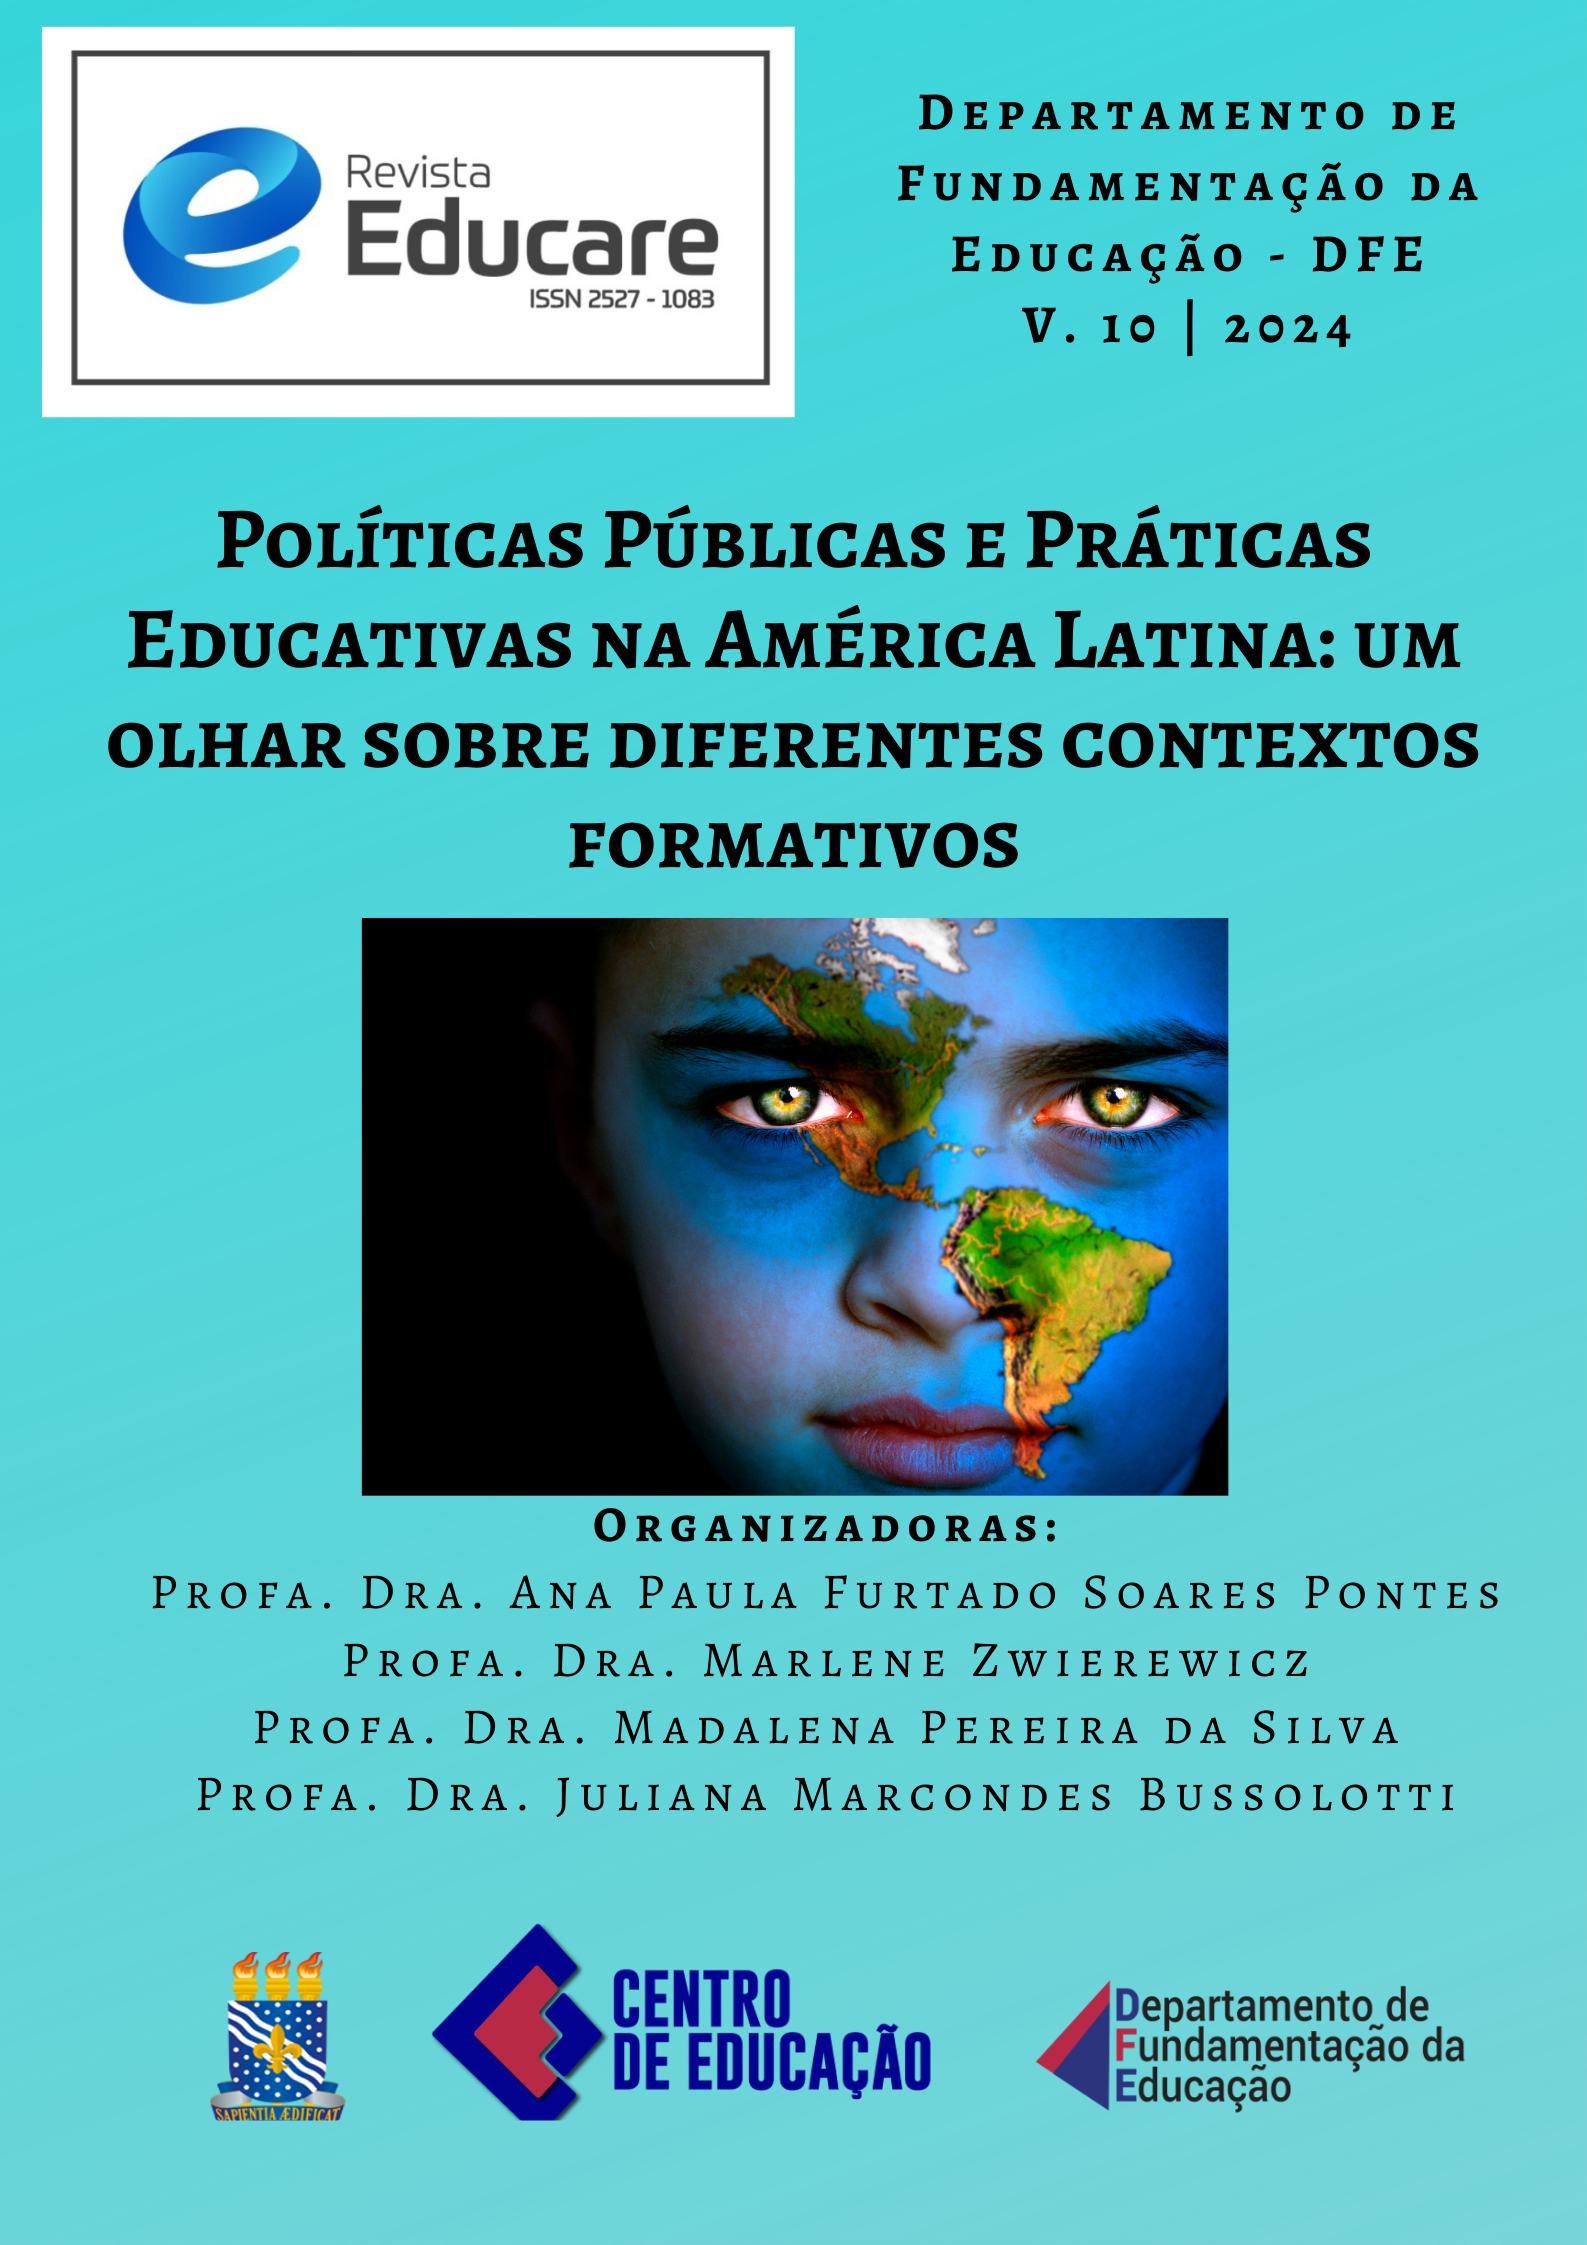 					Visualizar v. 10 (2024): Dossiê: Políticas Públicas e Práticas Educativas na América Latina: um olhar sobre diferentes contextos formativos  (EM CONSTRUÇÃO)
				